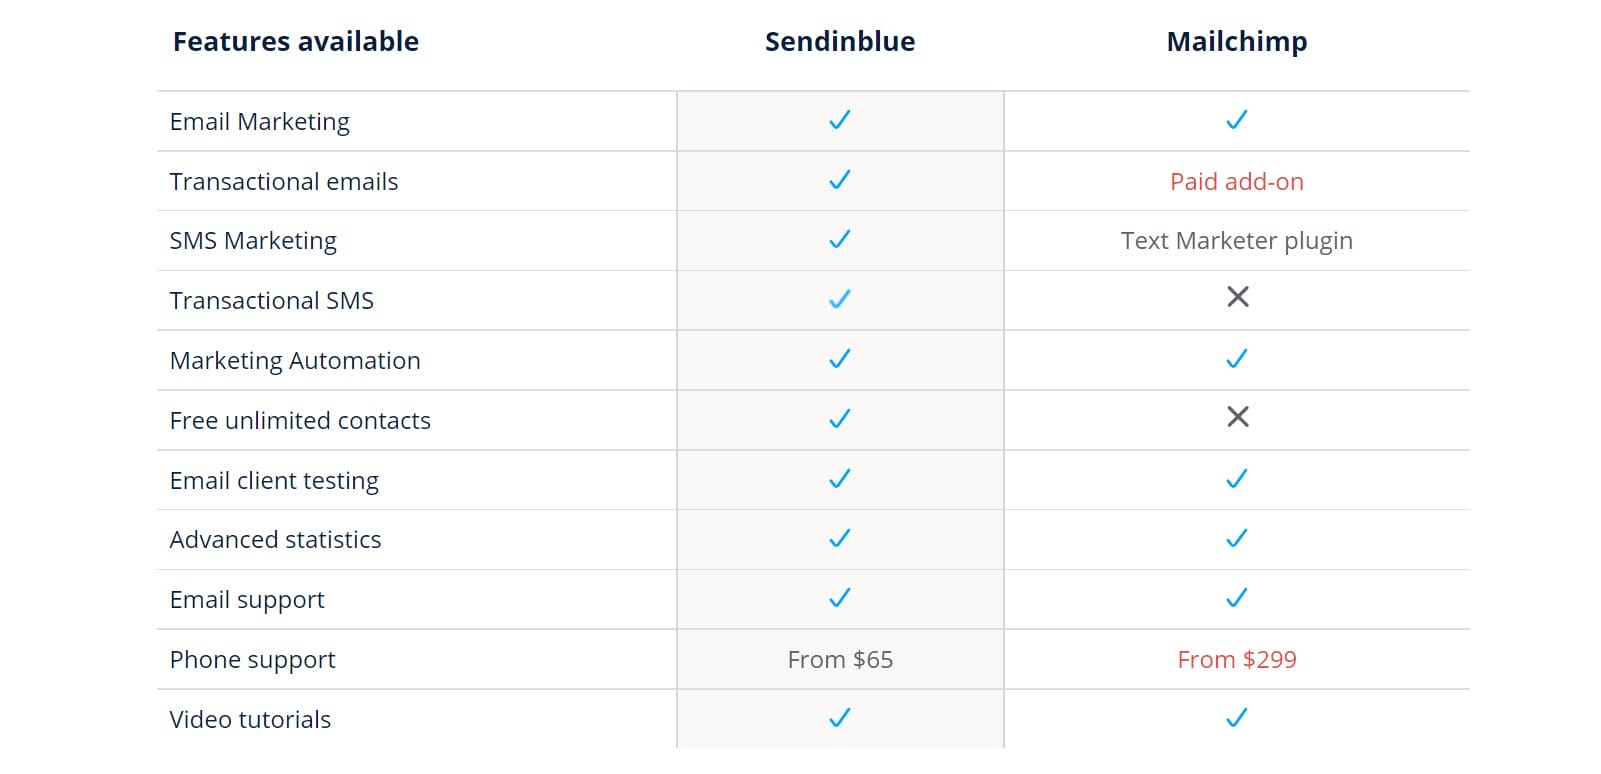 Sendinblue vs Mailchimp All Features Comparison